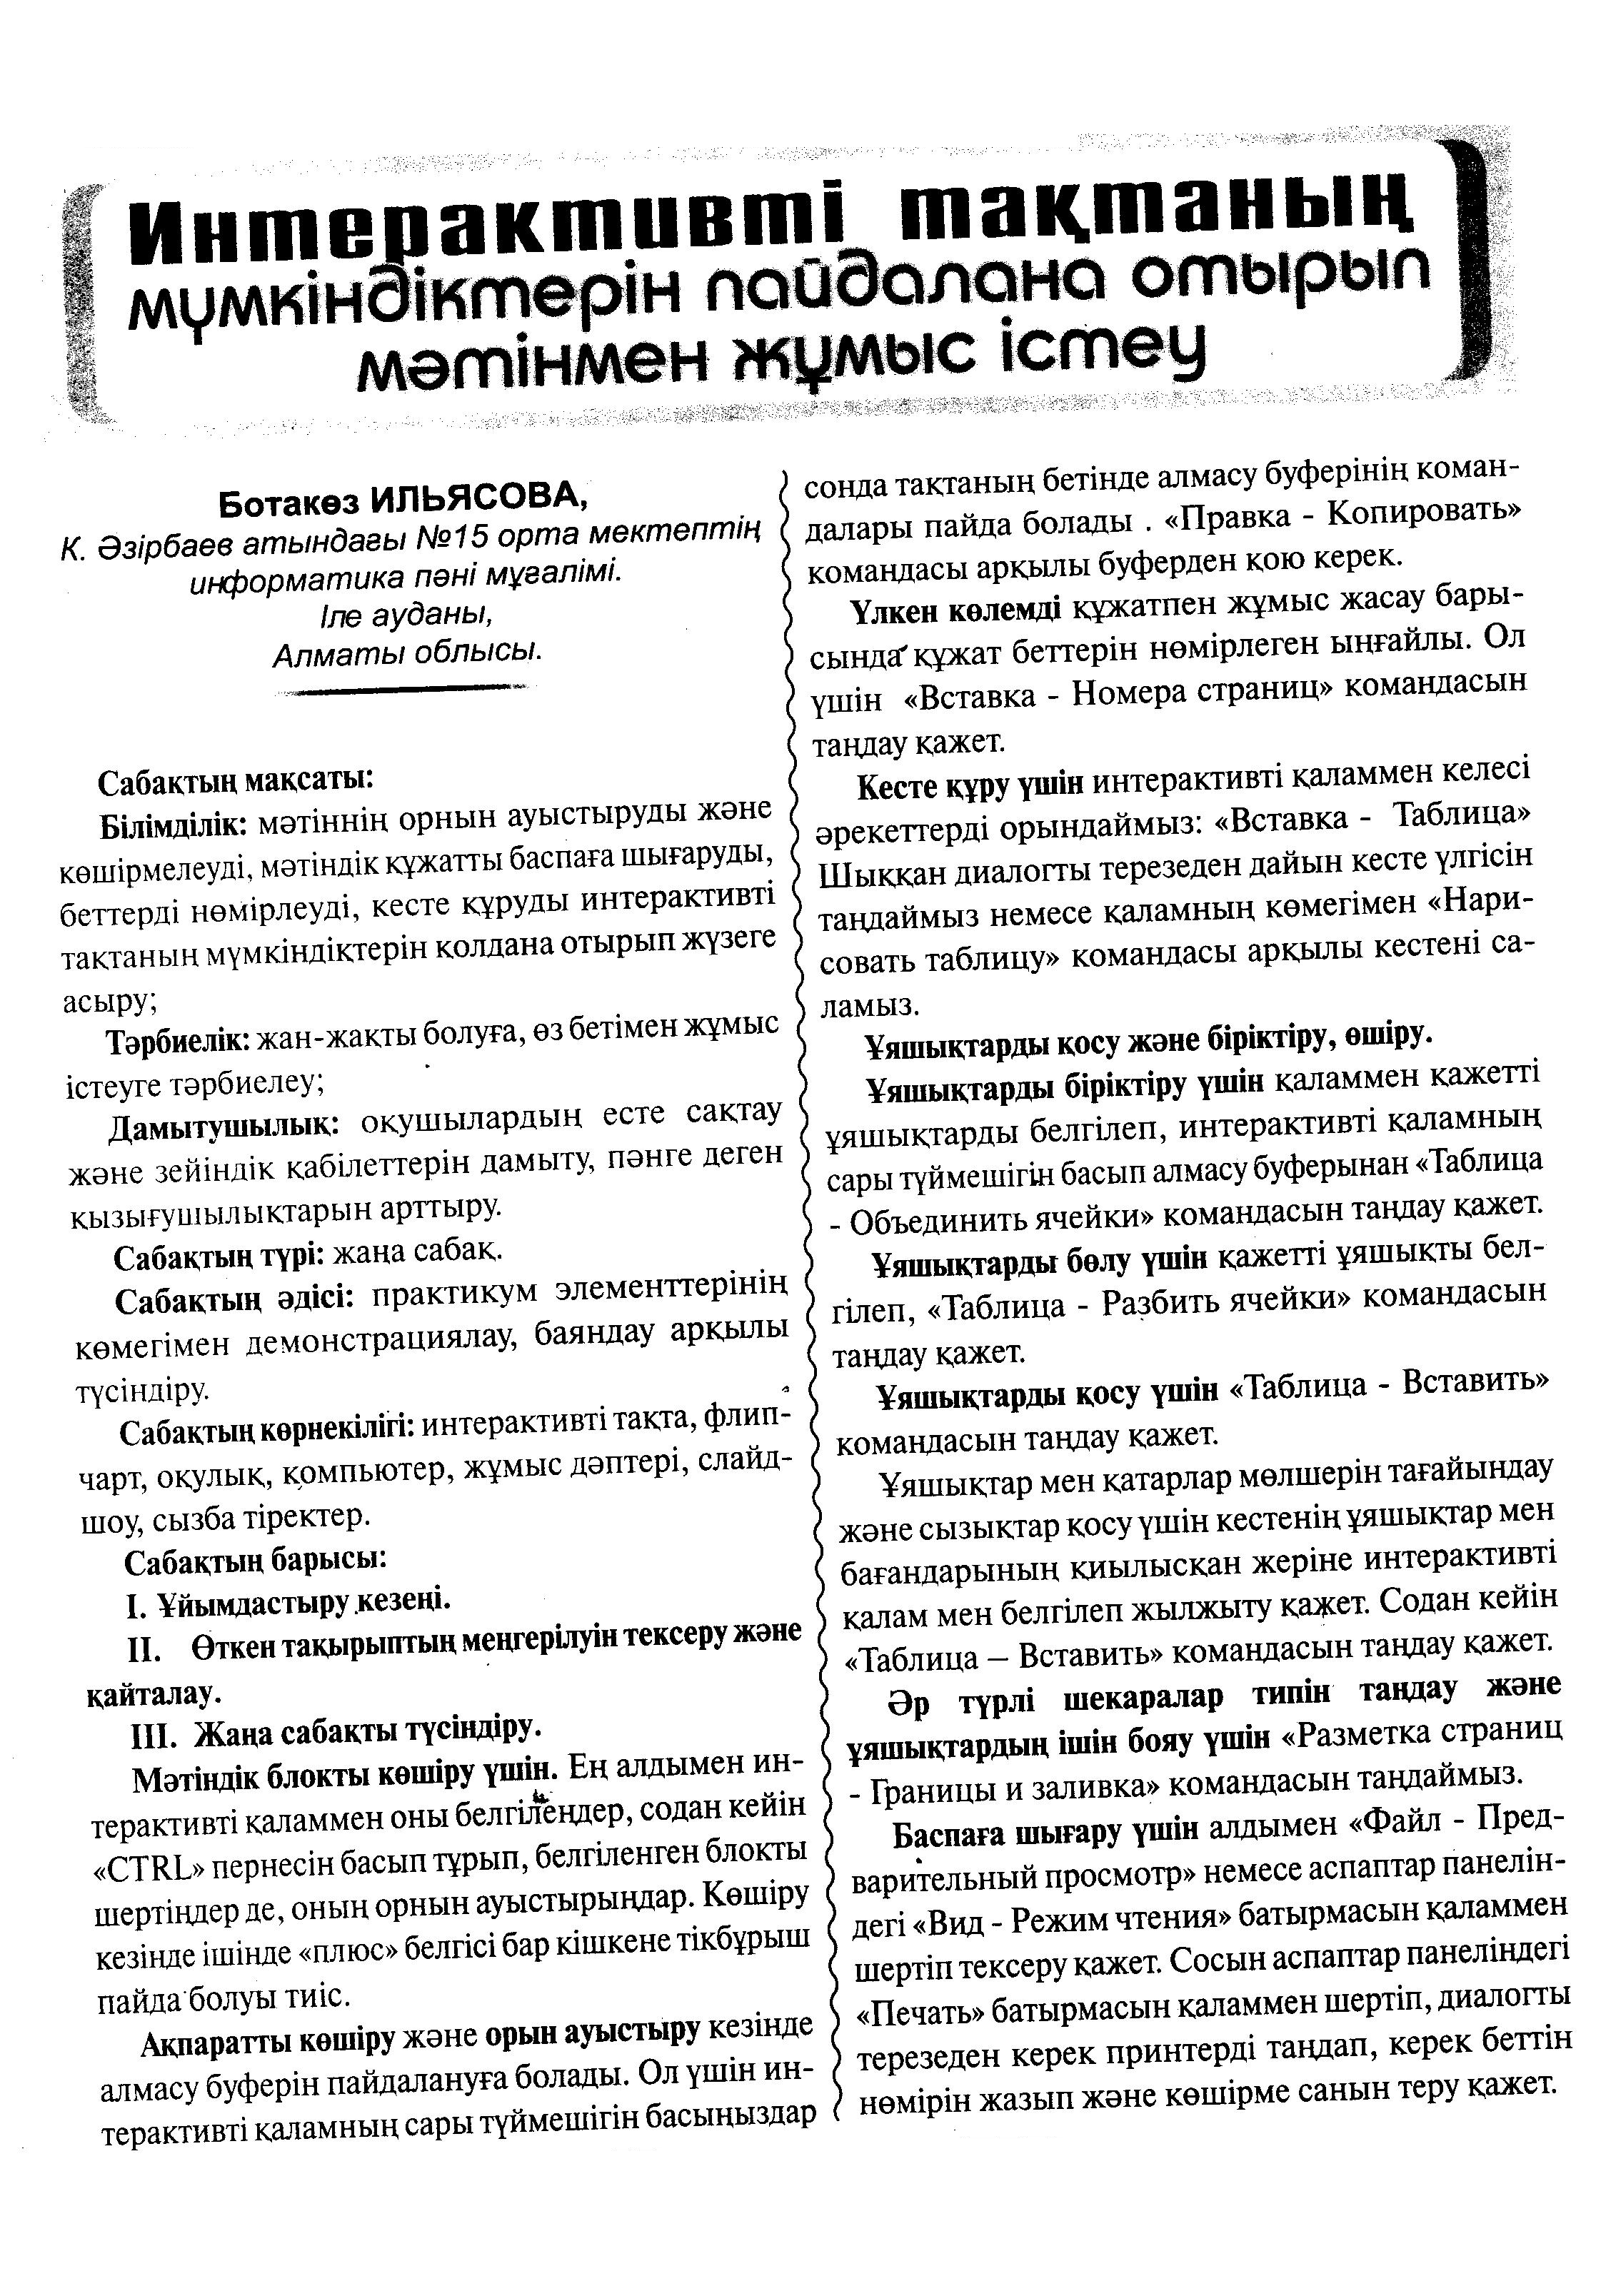 Конспект урока информатики для 8 класса по теме «Использование возможностей интерактивной доски при работе с текстом» (на казахском языке)